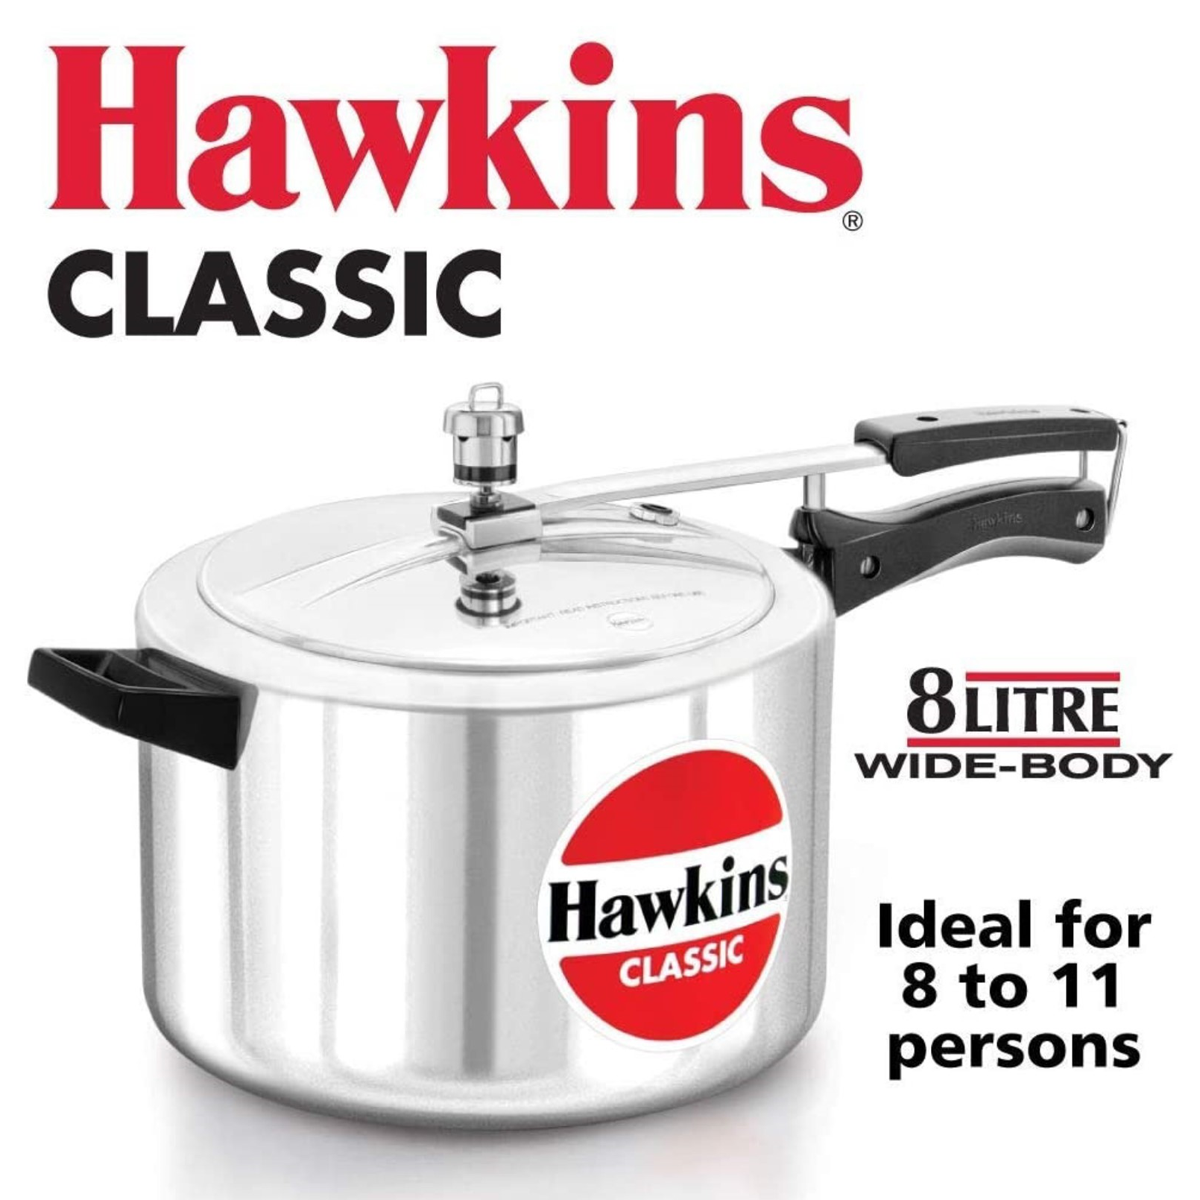 Hawkins Pressure Cooker - CLASSIC - Silver - 8 L Wide